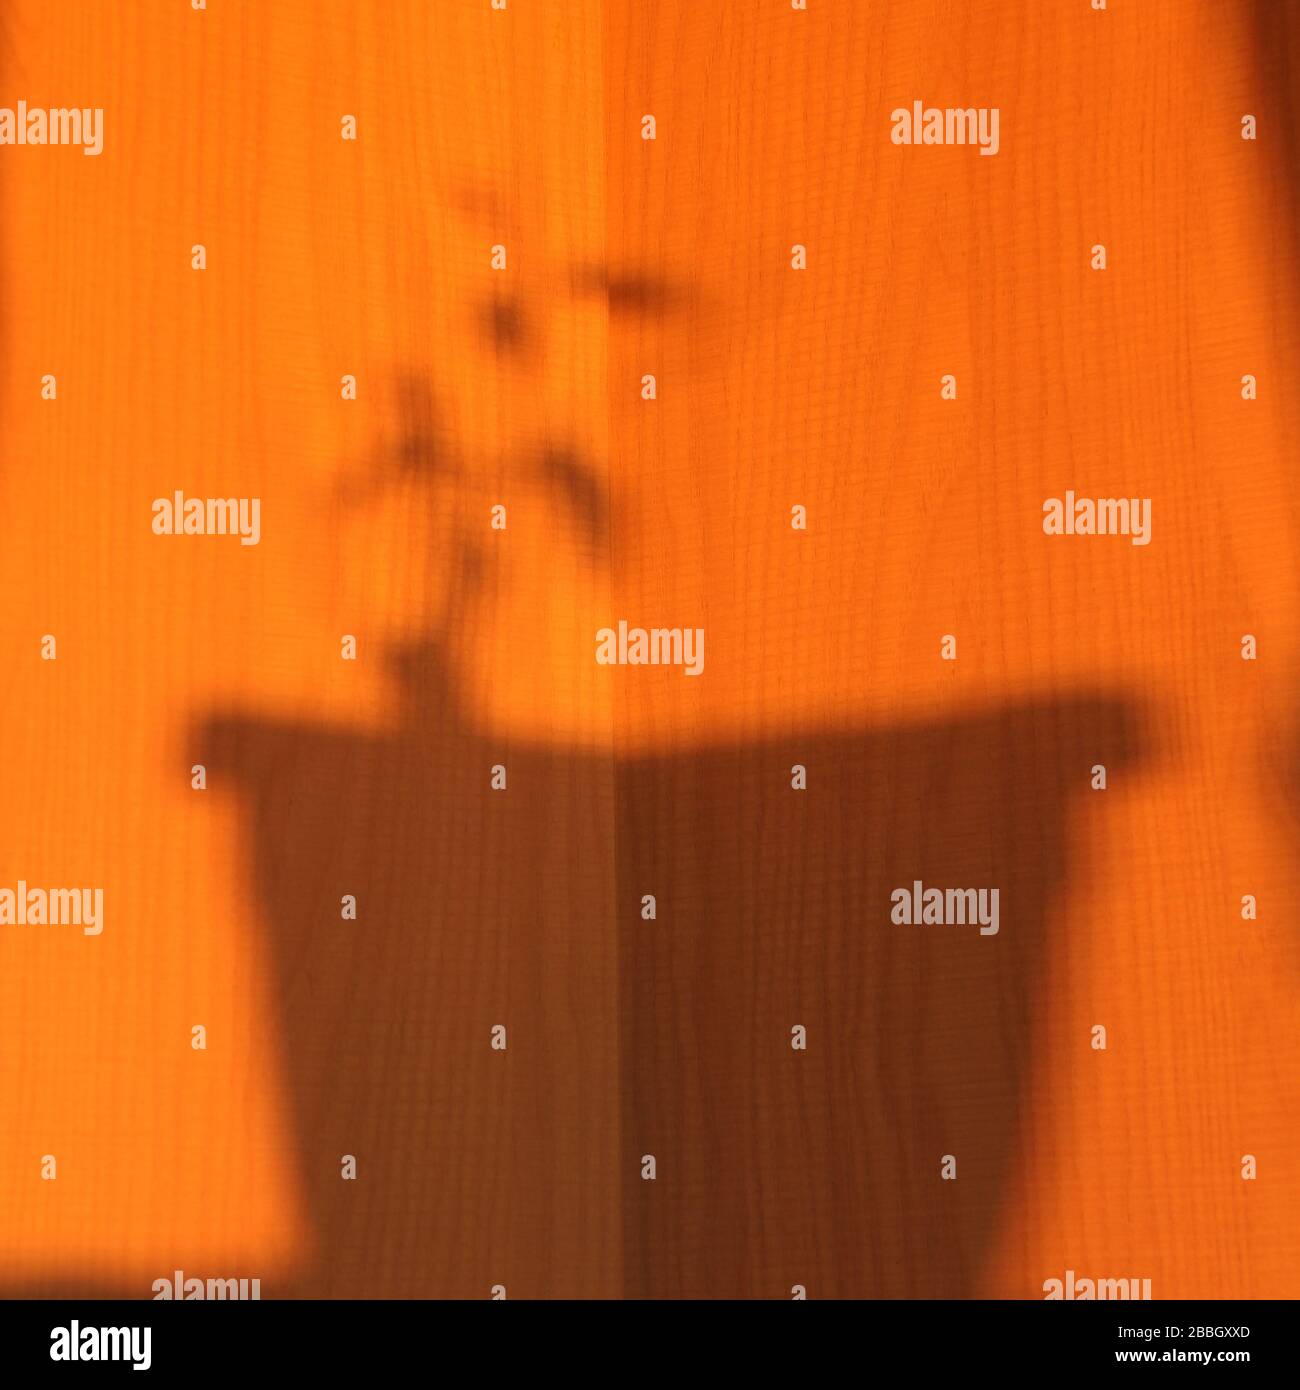 Schatten eines Blumentopfes mit einer Pflanze auf einem orangefarbenen, sonnigen Hintergrund. Stock-Illustration für Web und Print mit leerem Platz für Text und Design. Stockfoto